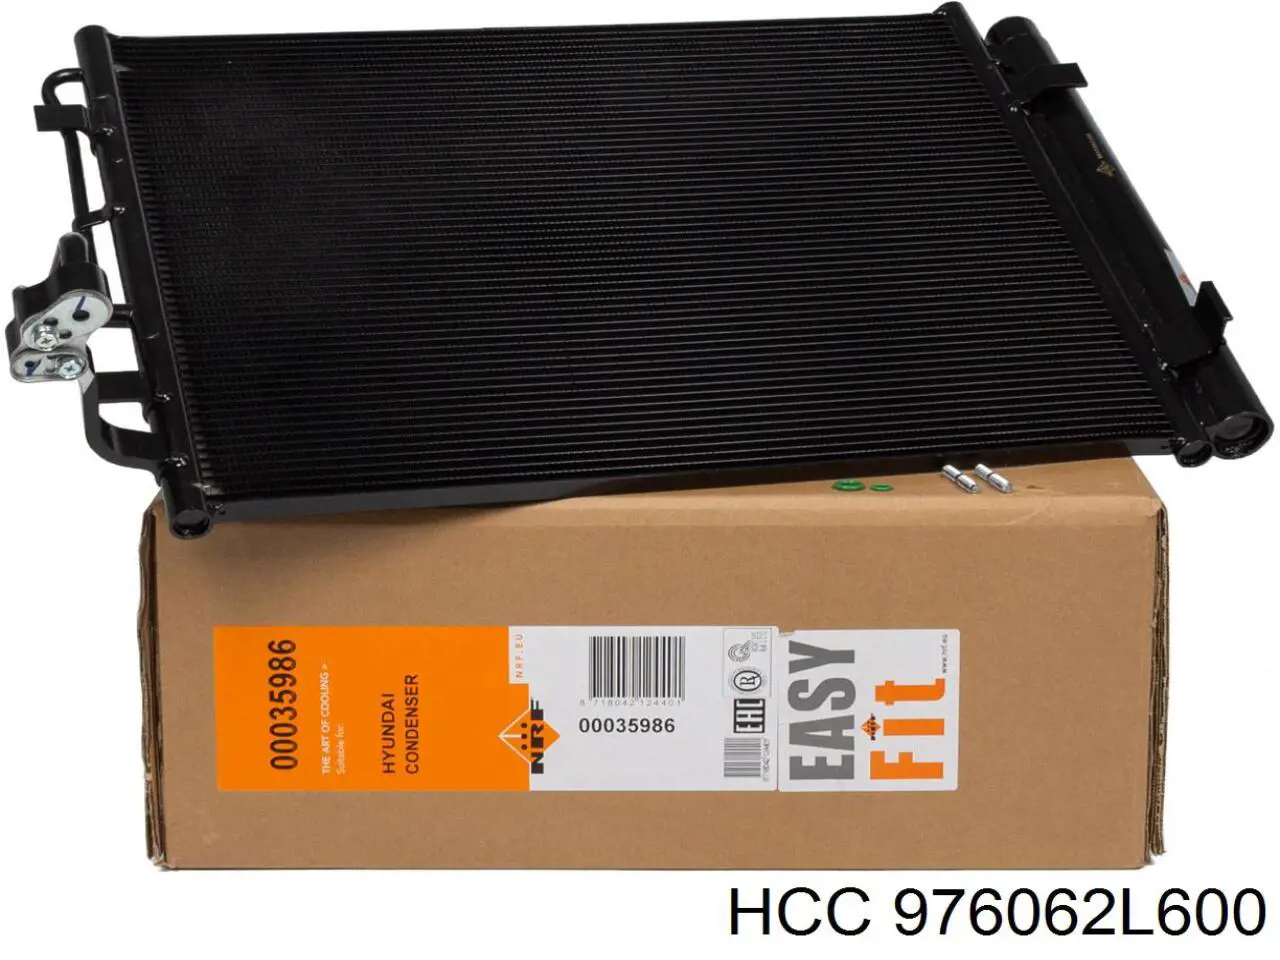 976062L600 HCC condensador aire acondicionado